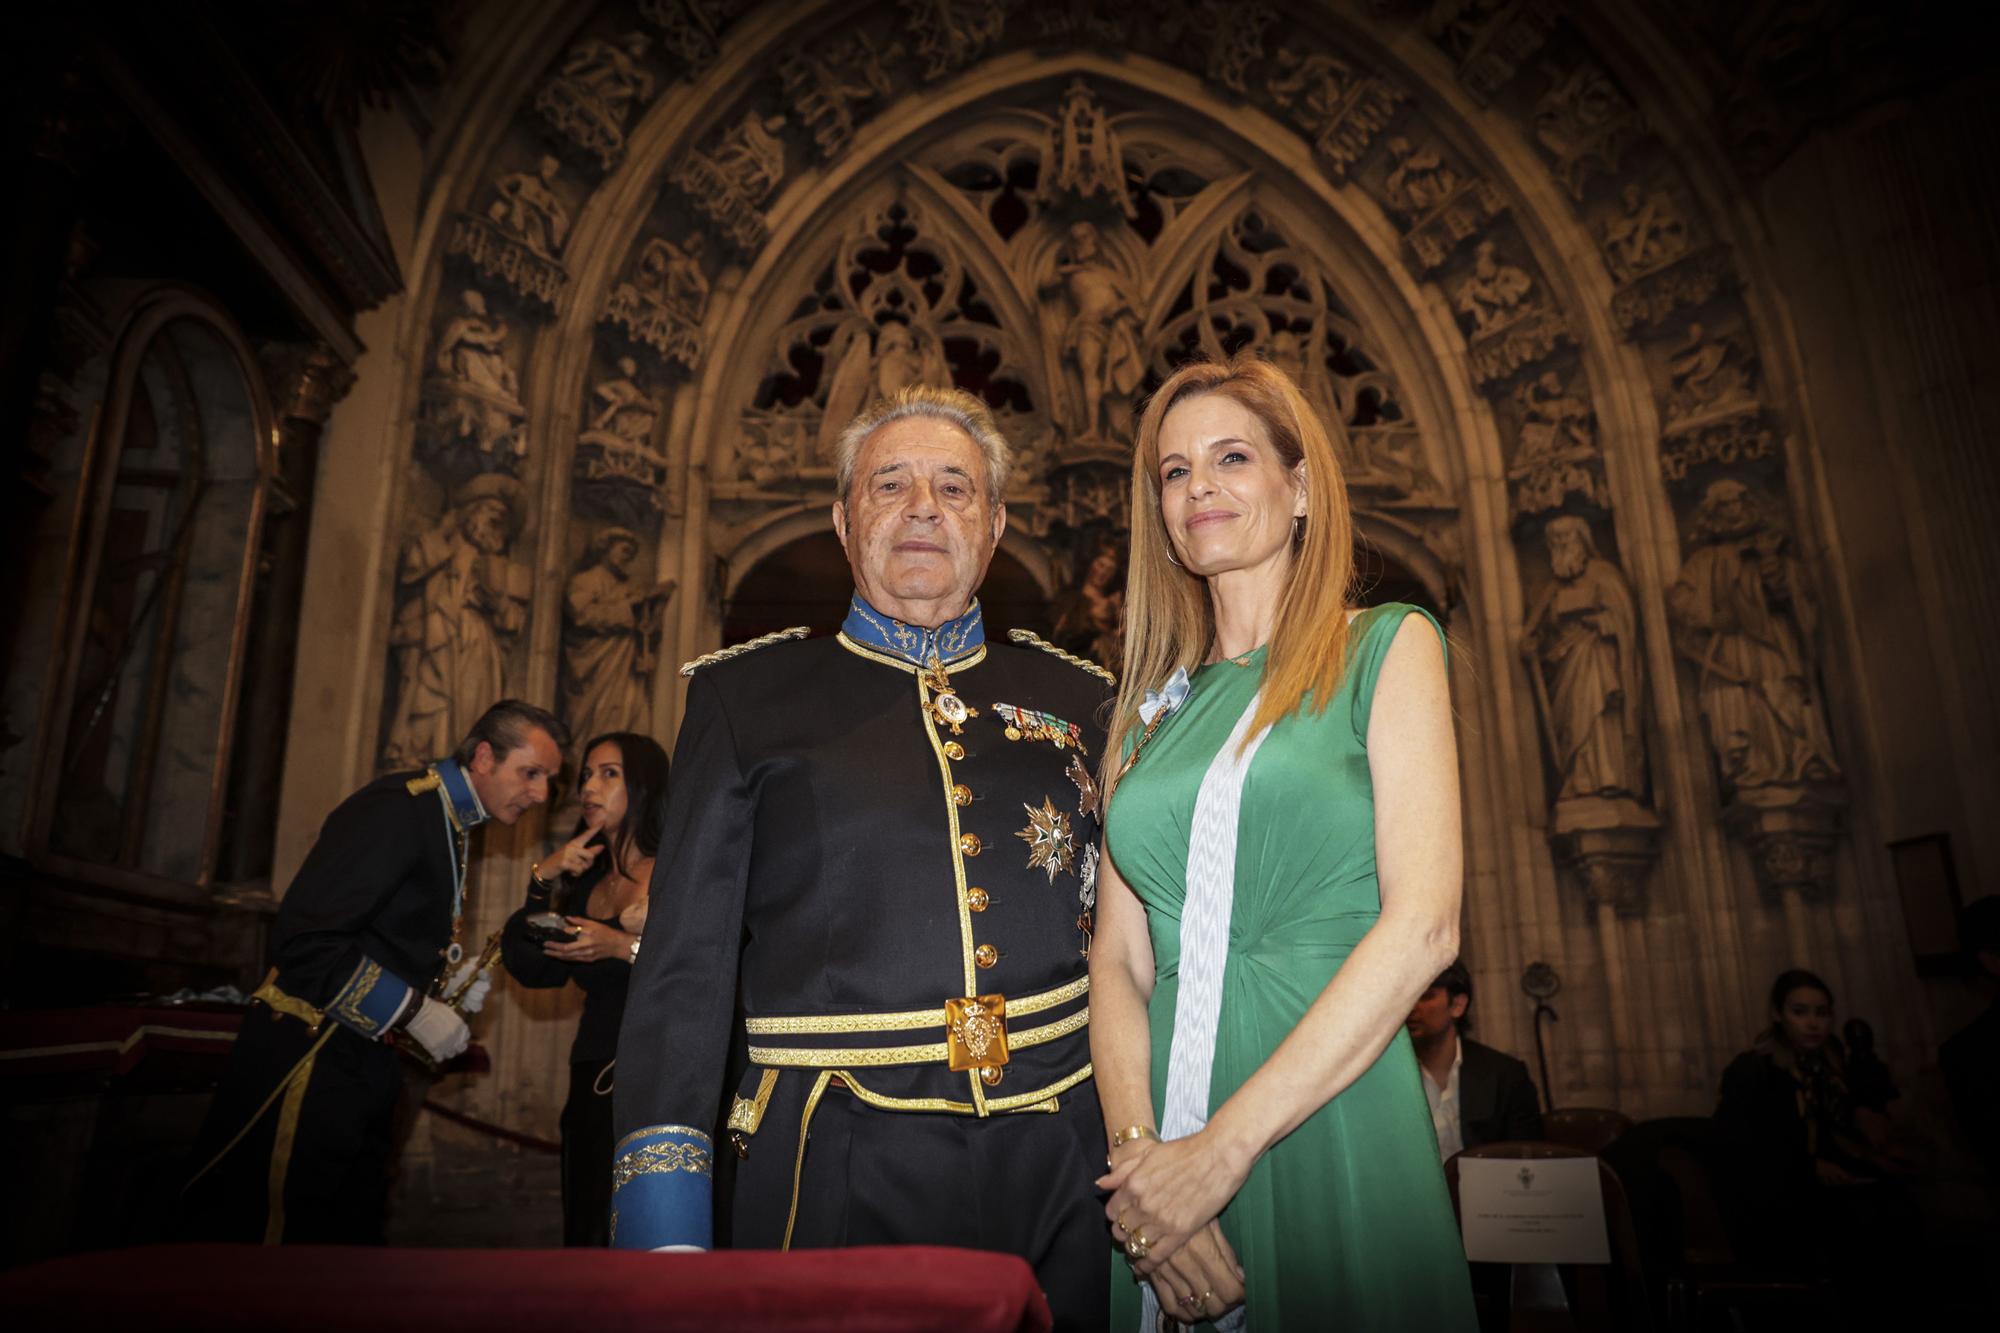 Eva Longoria vuelve a Asturias  invitada por Real Cuerpo de la Nobleza